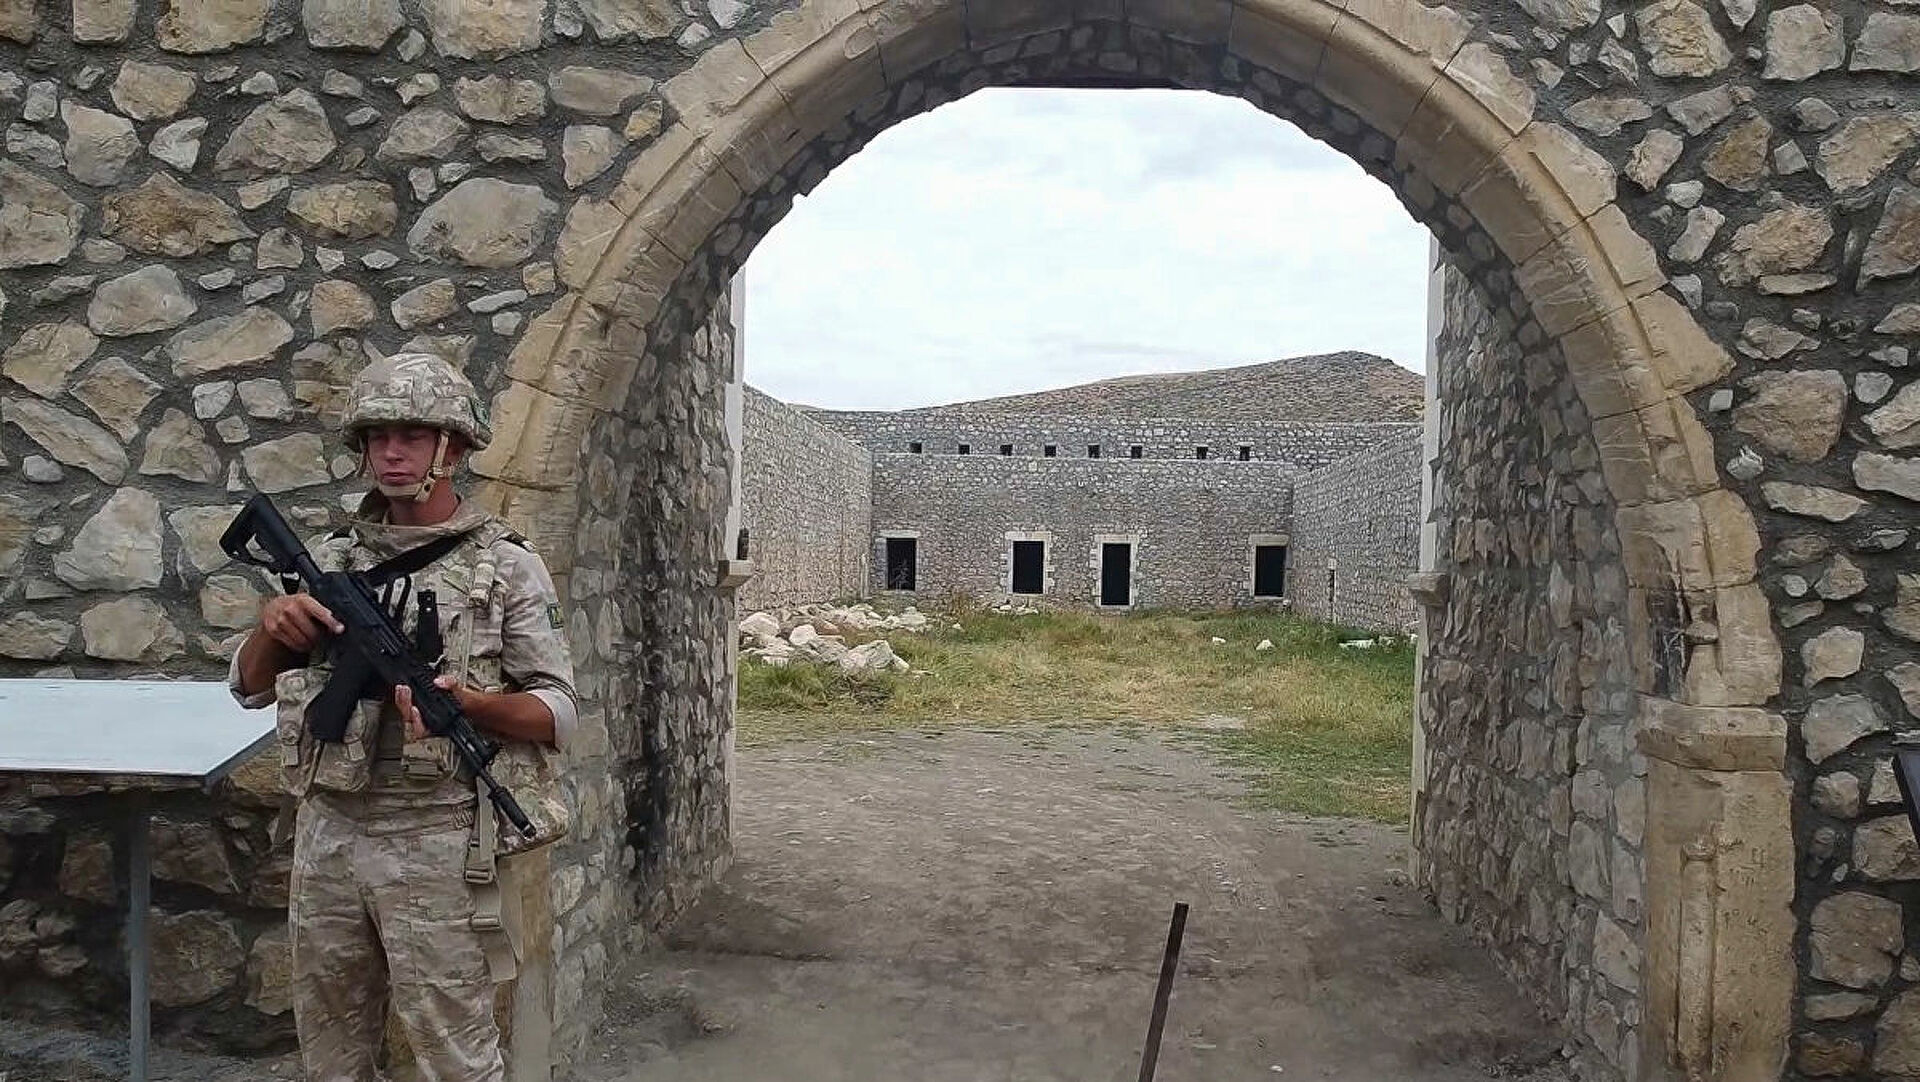 Ermeni hacılar Karabağ’daki manastırı ziyaret ederken, Rus barış güçleri güvenliği sağladı